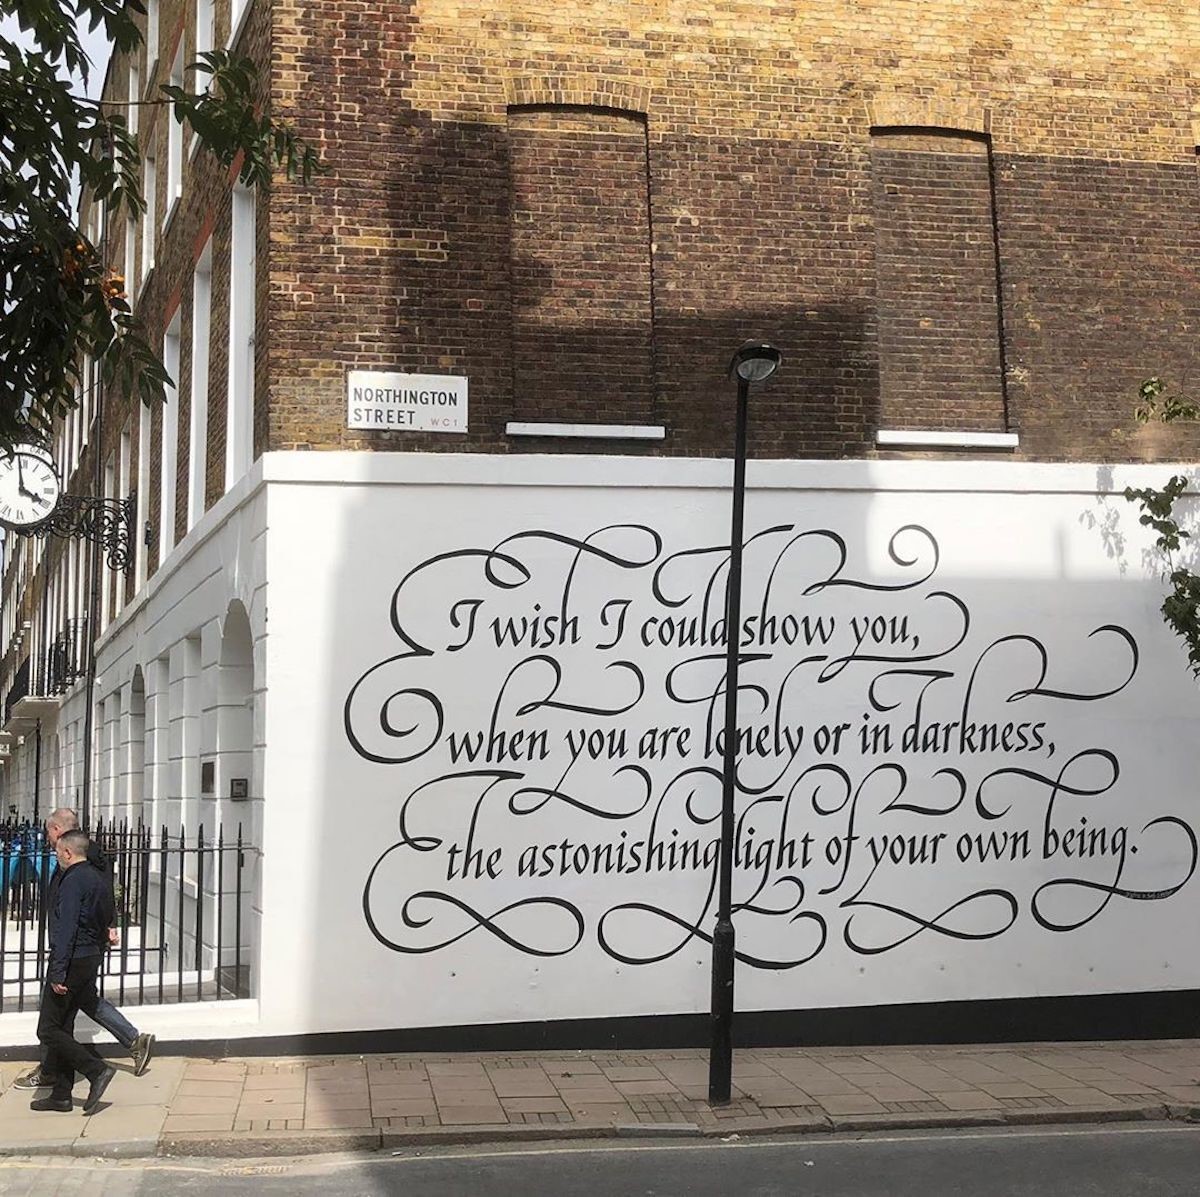 شعر حافظ بر دیواری در لندن